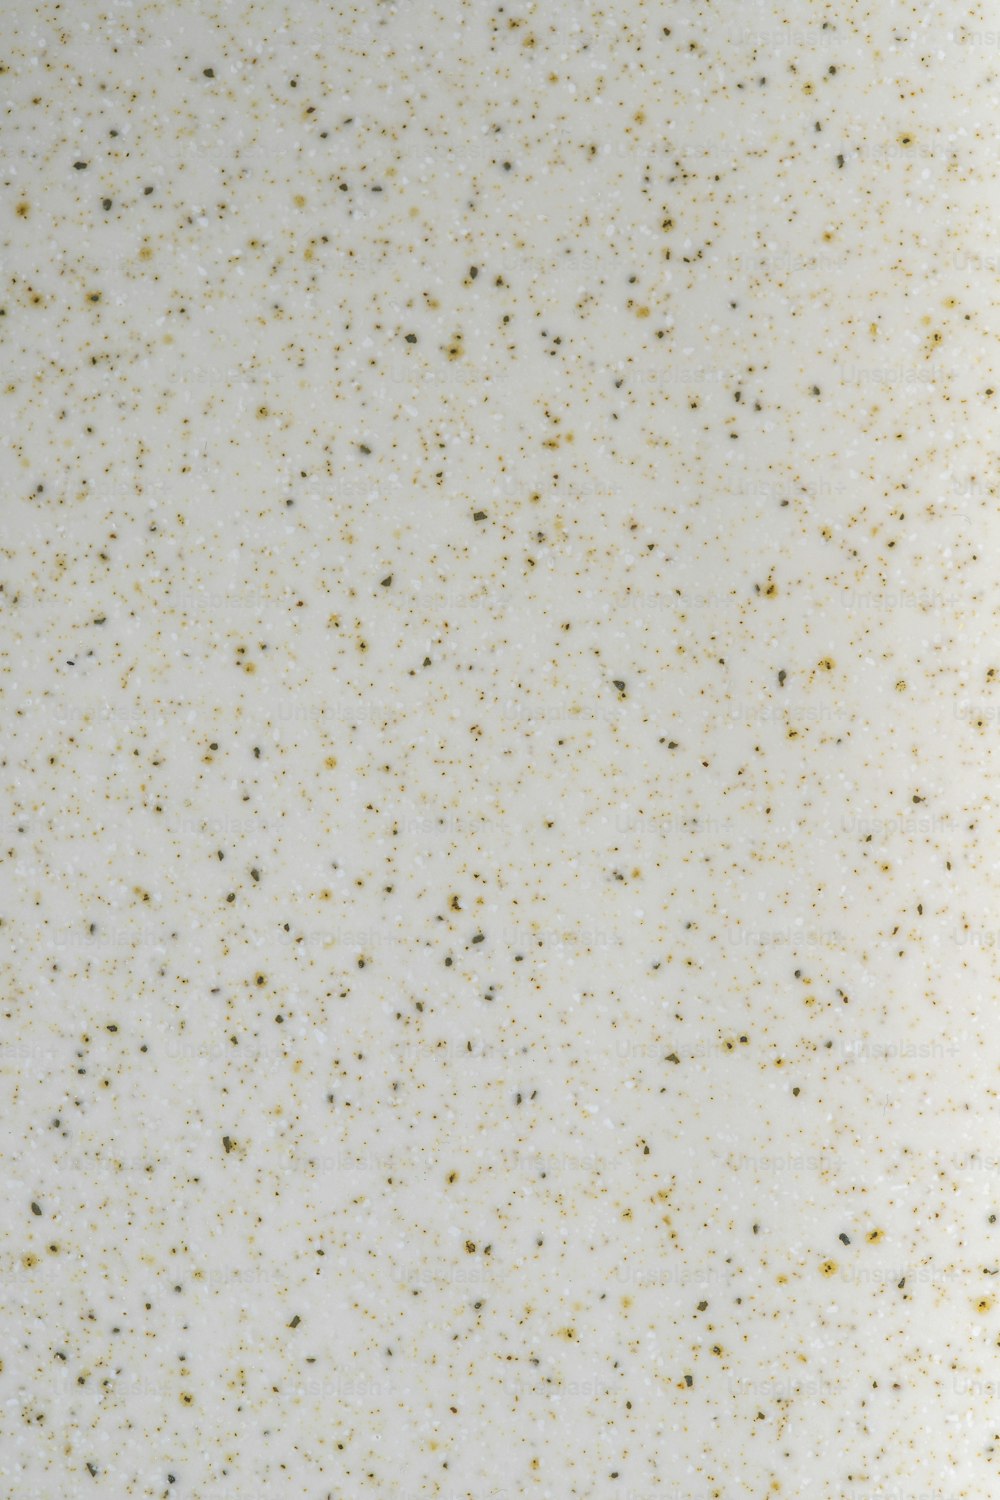 eine Nahaufnahme einer weißen Oberfläche mit Goldflecken